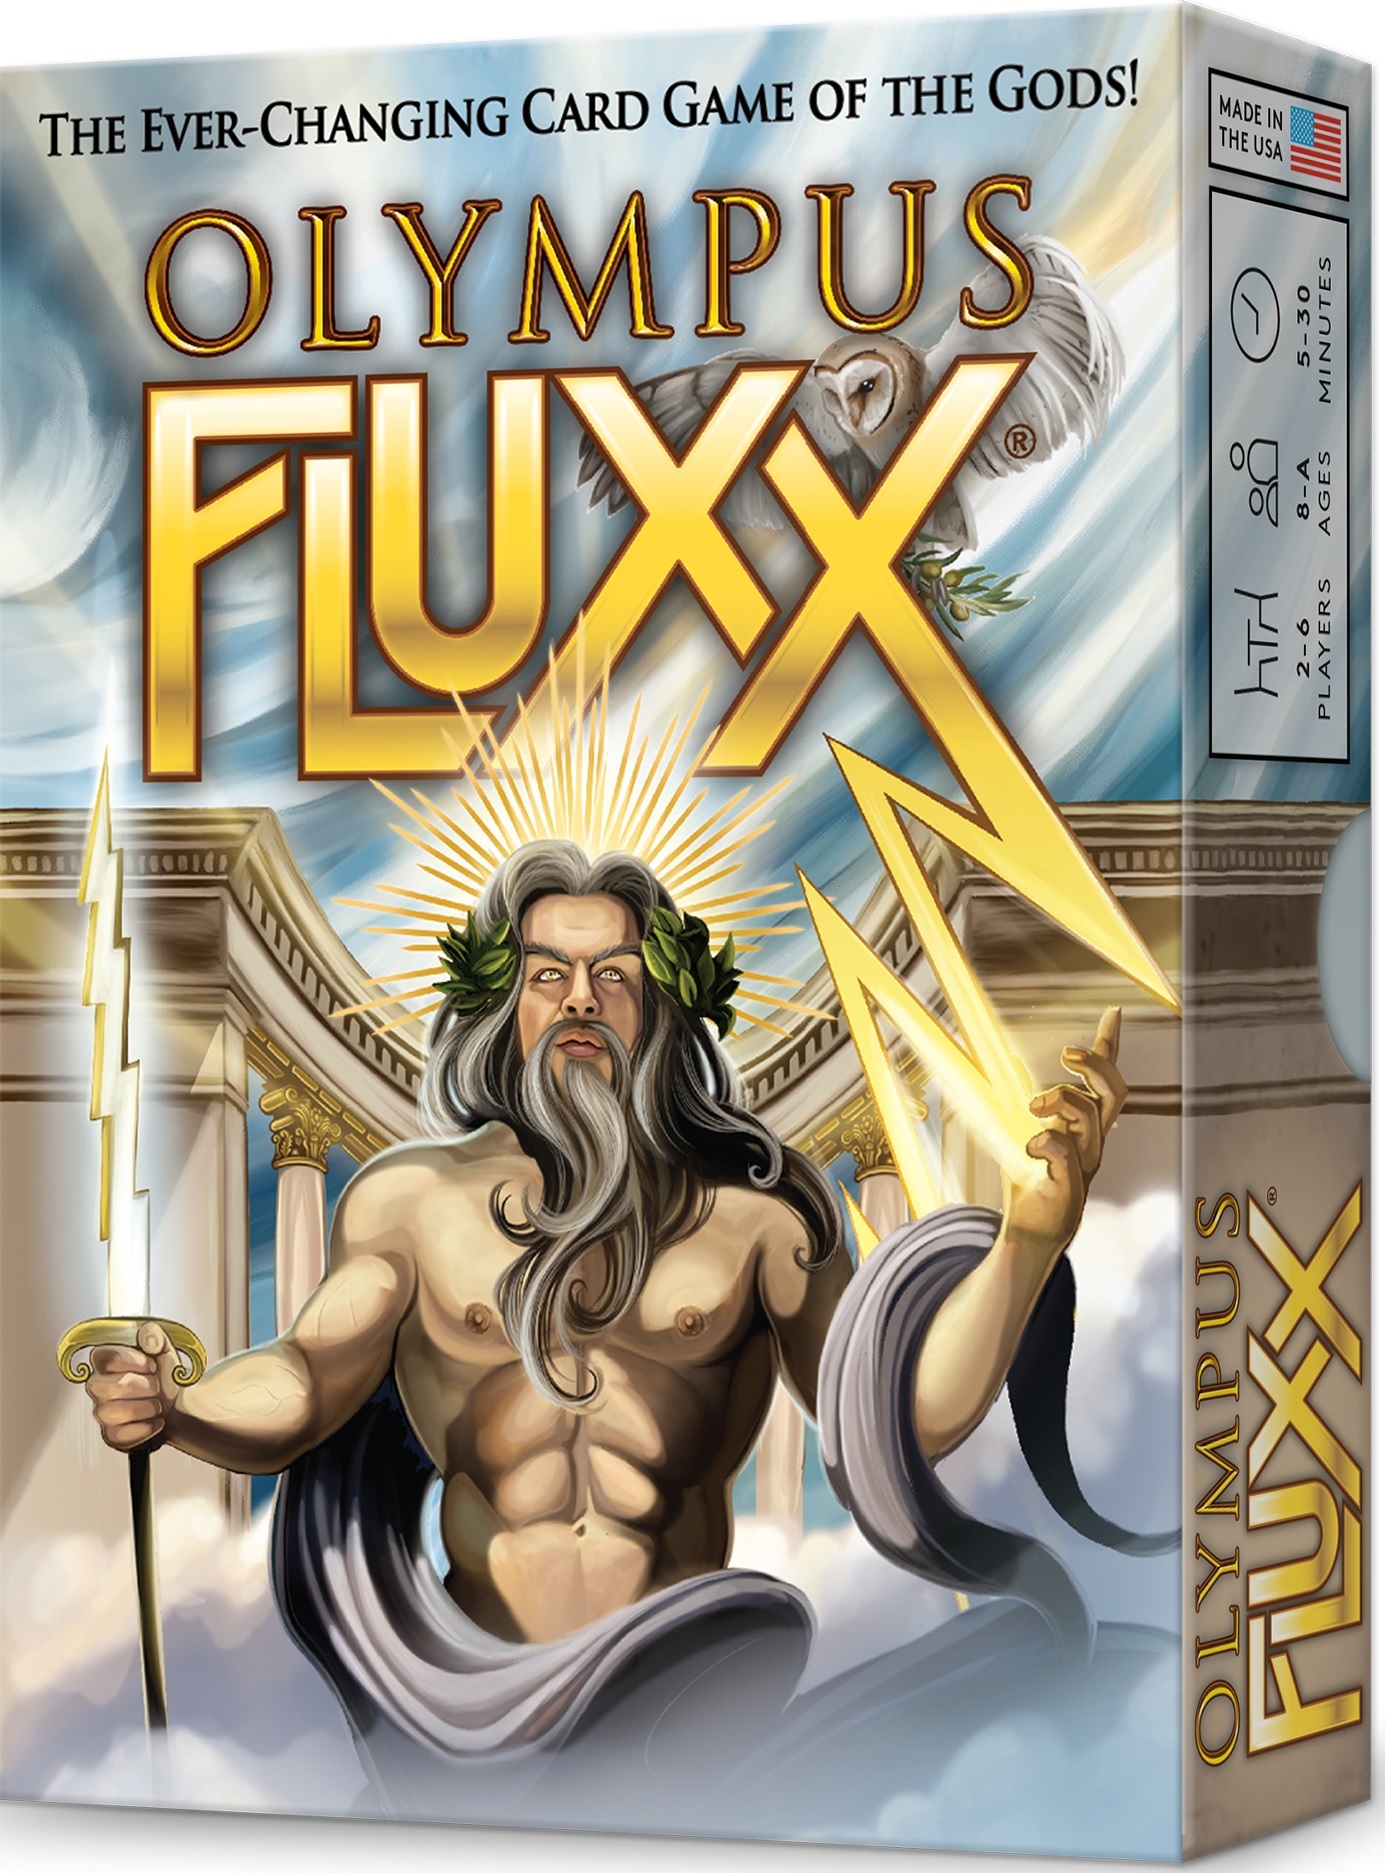 Olympus Fluxx